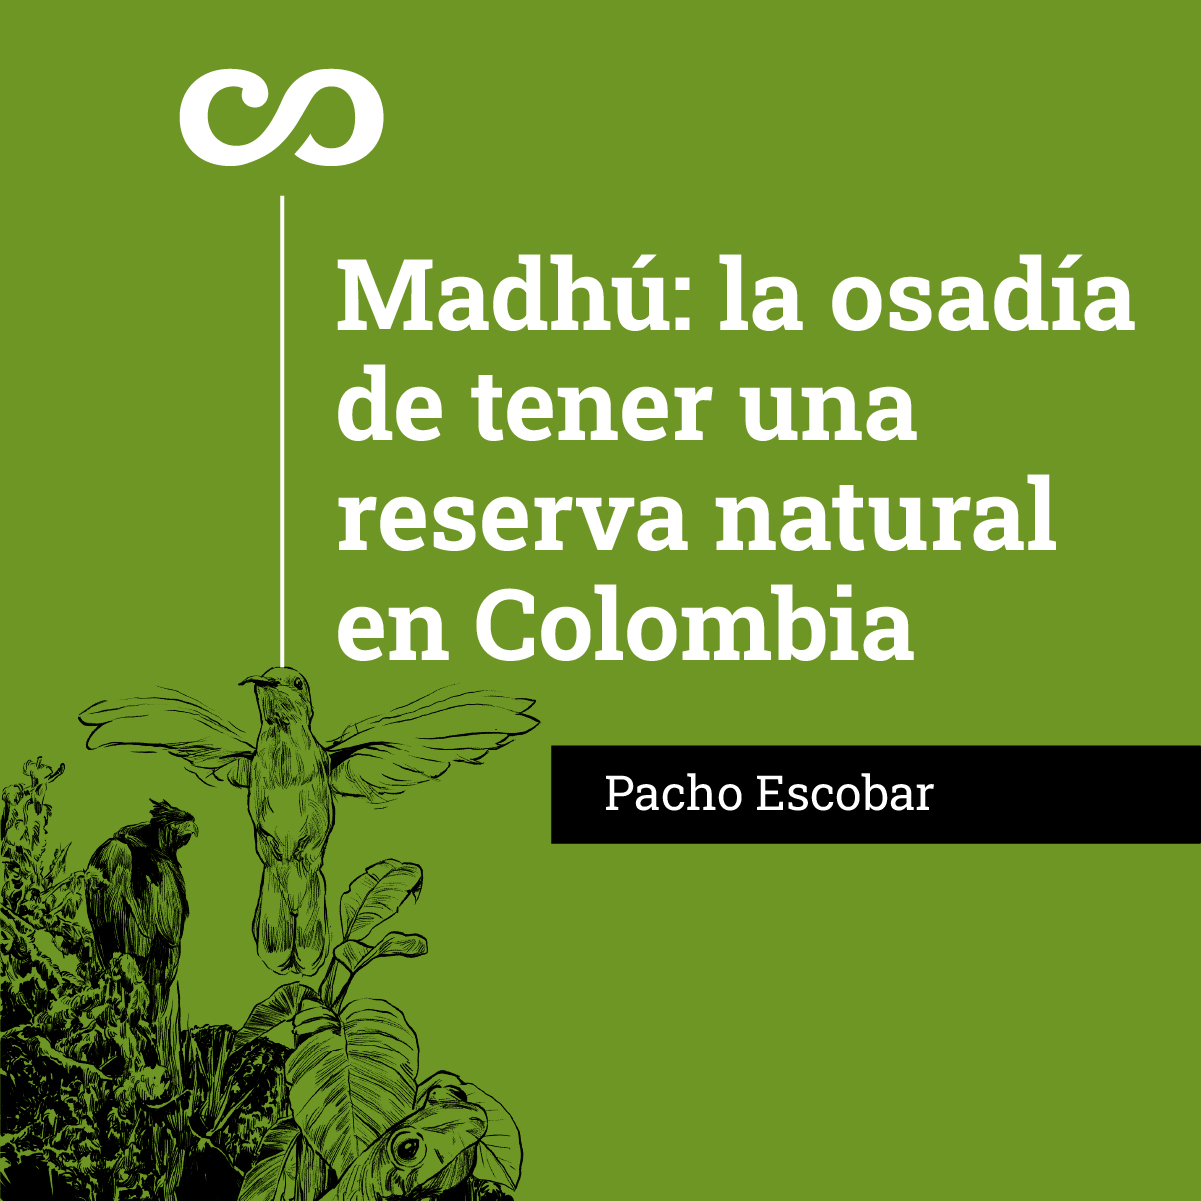 Madhú: la osadía de tener una reserva natural en Colombia